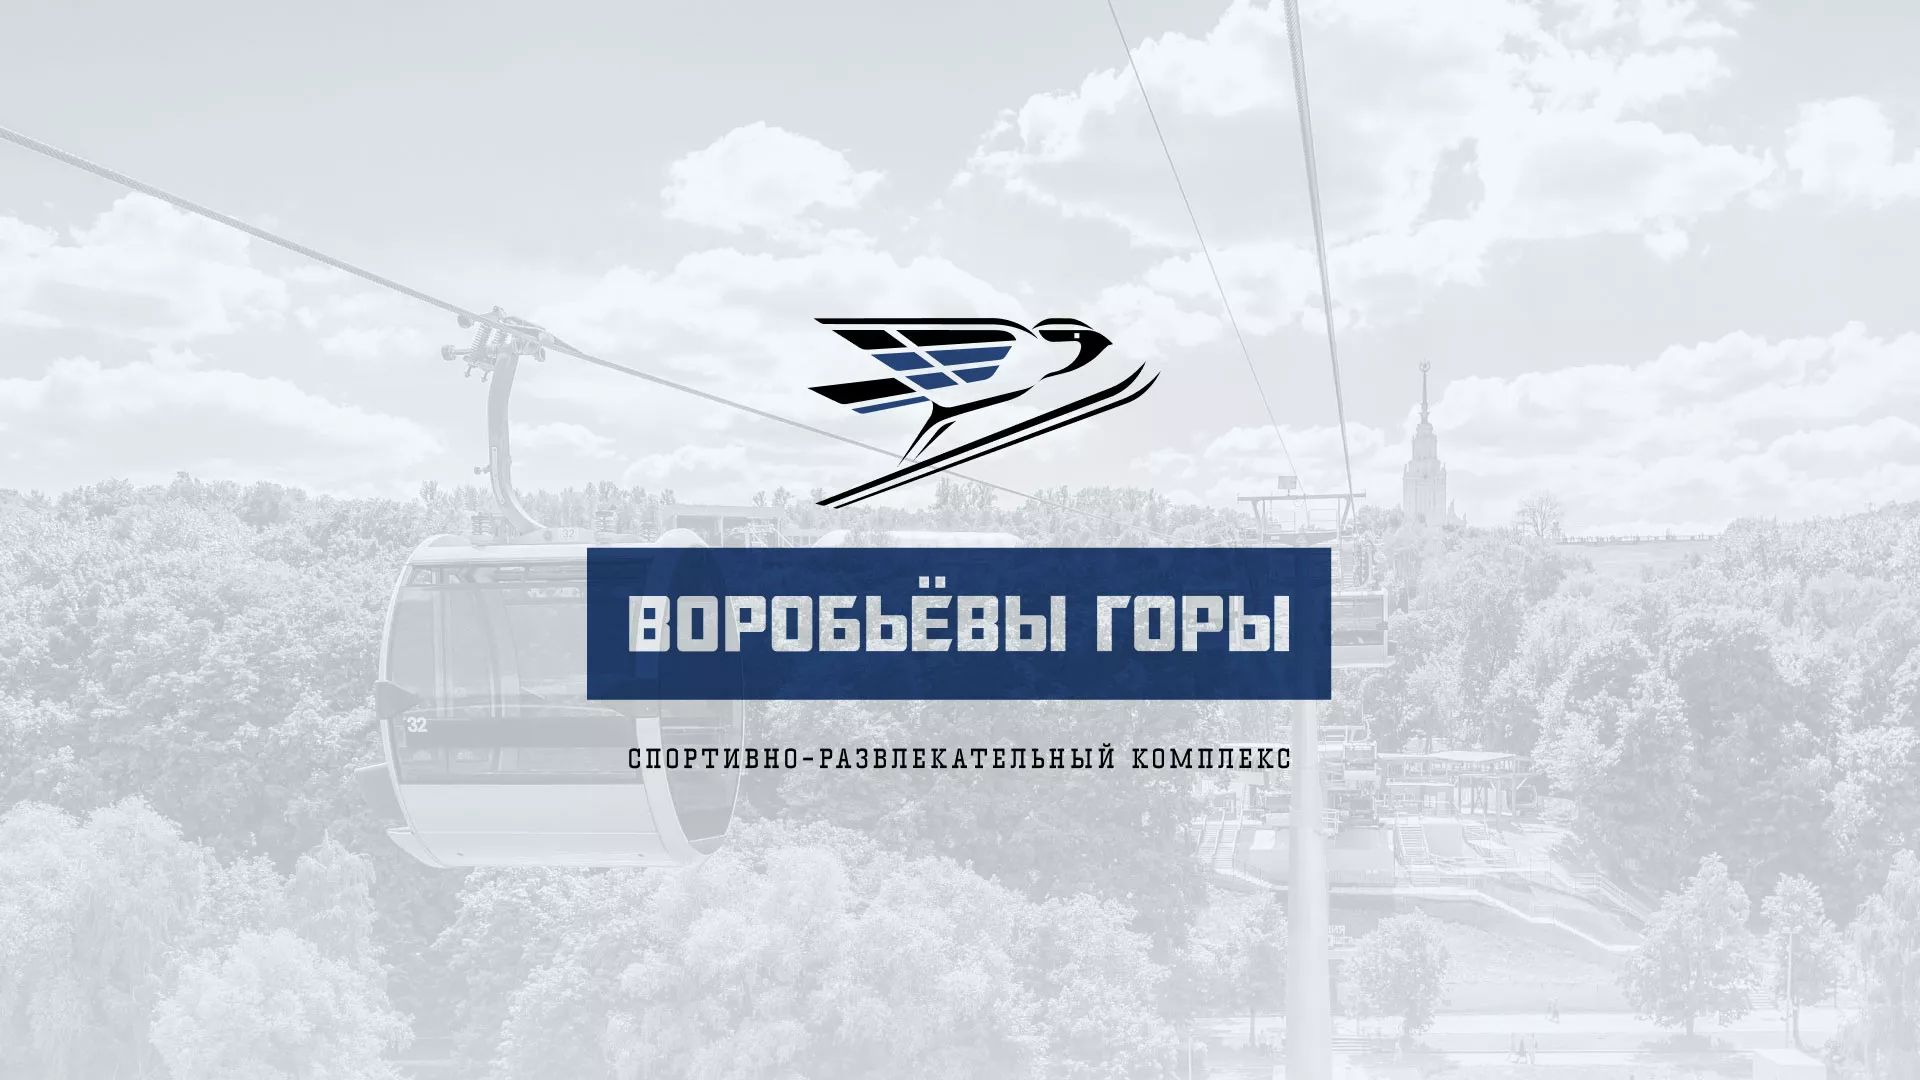 Разработка сайта в Сестрорецке для спортивно-развлекательного комплекса «Воробьёвы горы»